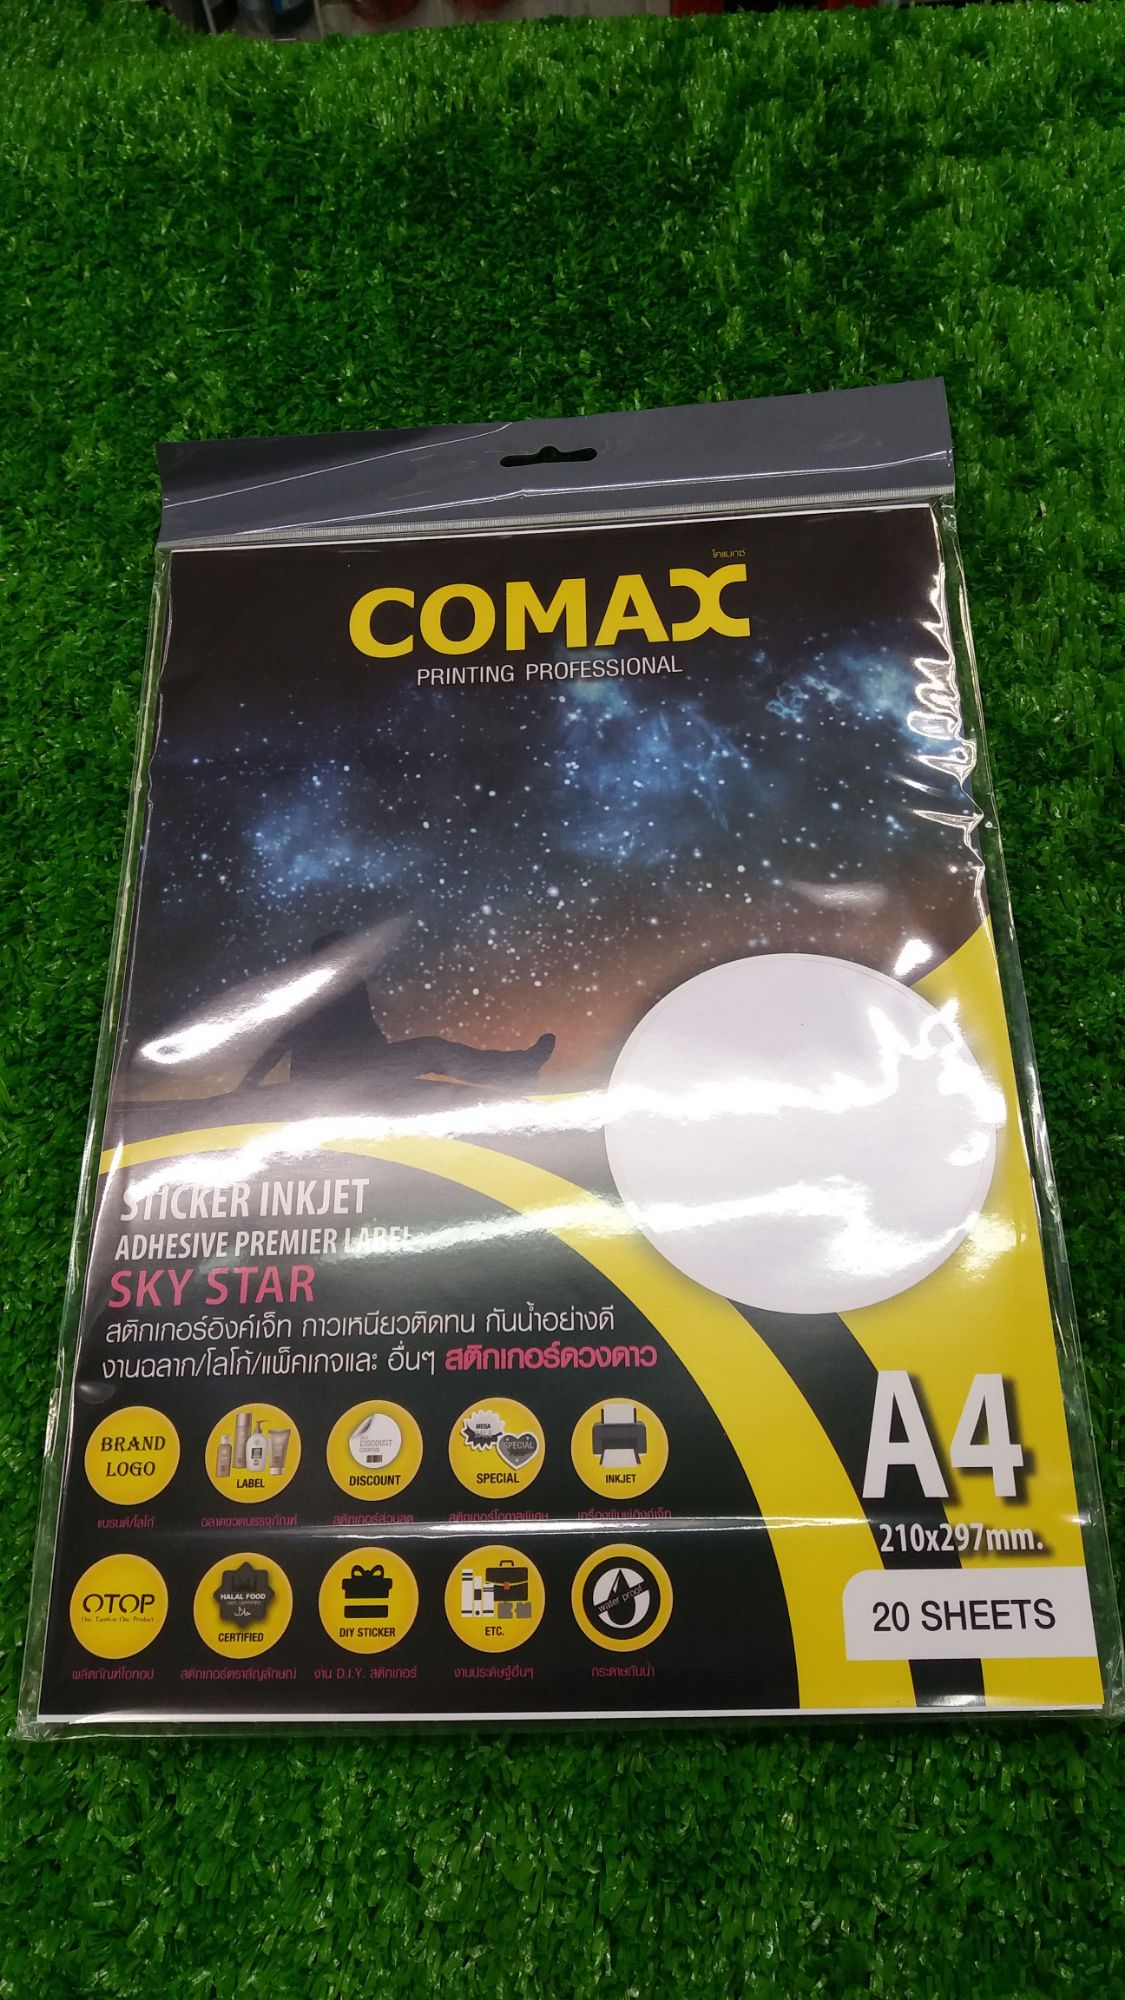 กระดาษสติ๊กเกอร์อิ้งค์เจ็ท 3 มิติแบบลายดวงดาว ( Sky Star )ยี่ห้อ Comax ขนาด A4 จำนวน 20 แผ่น